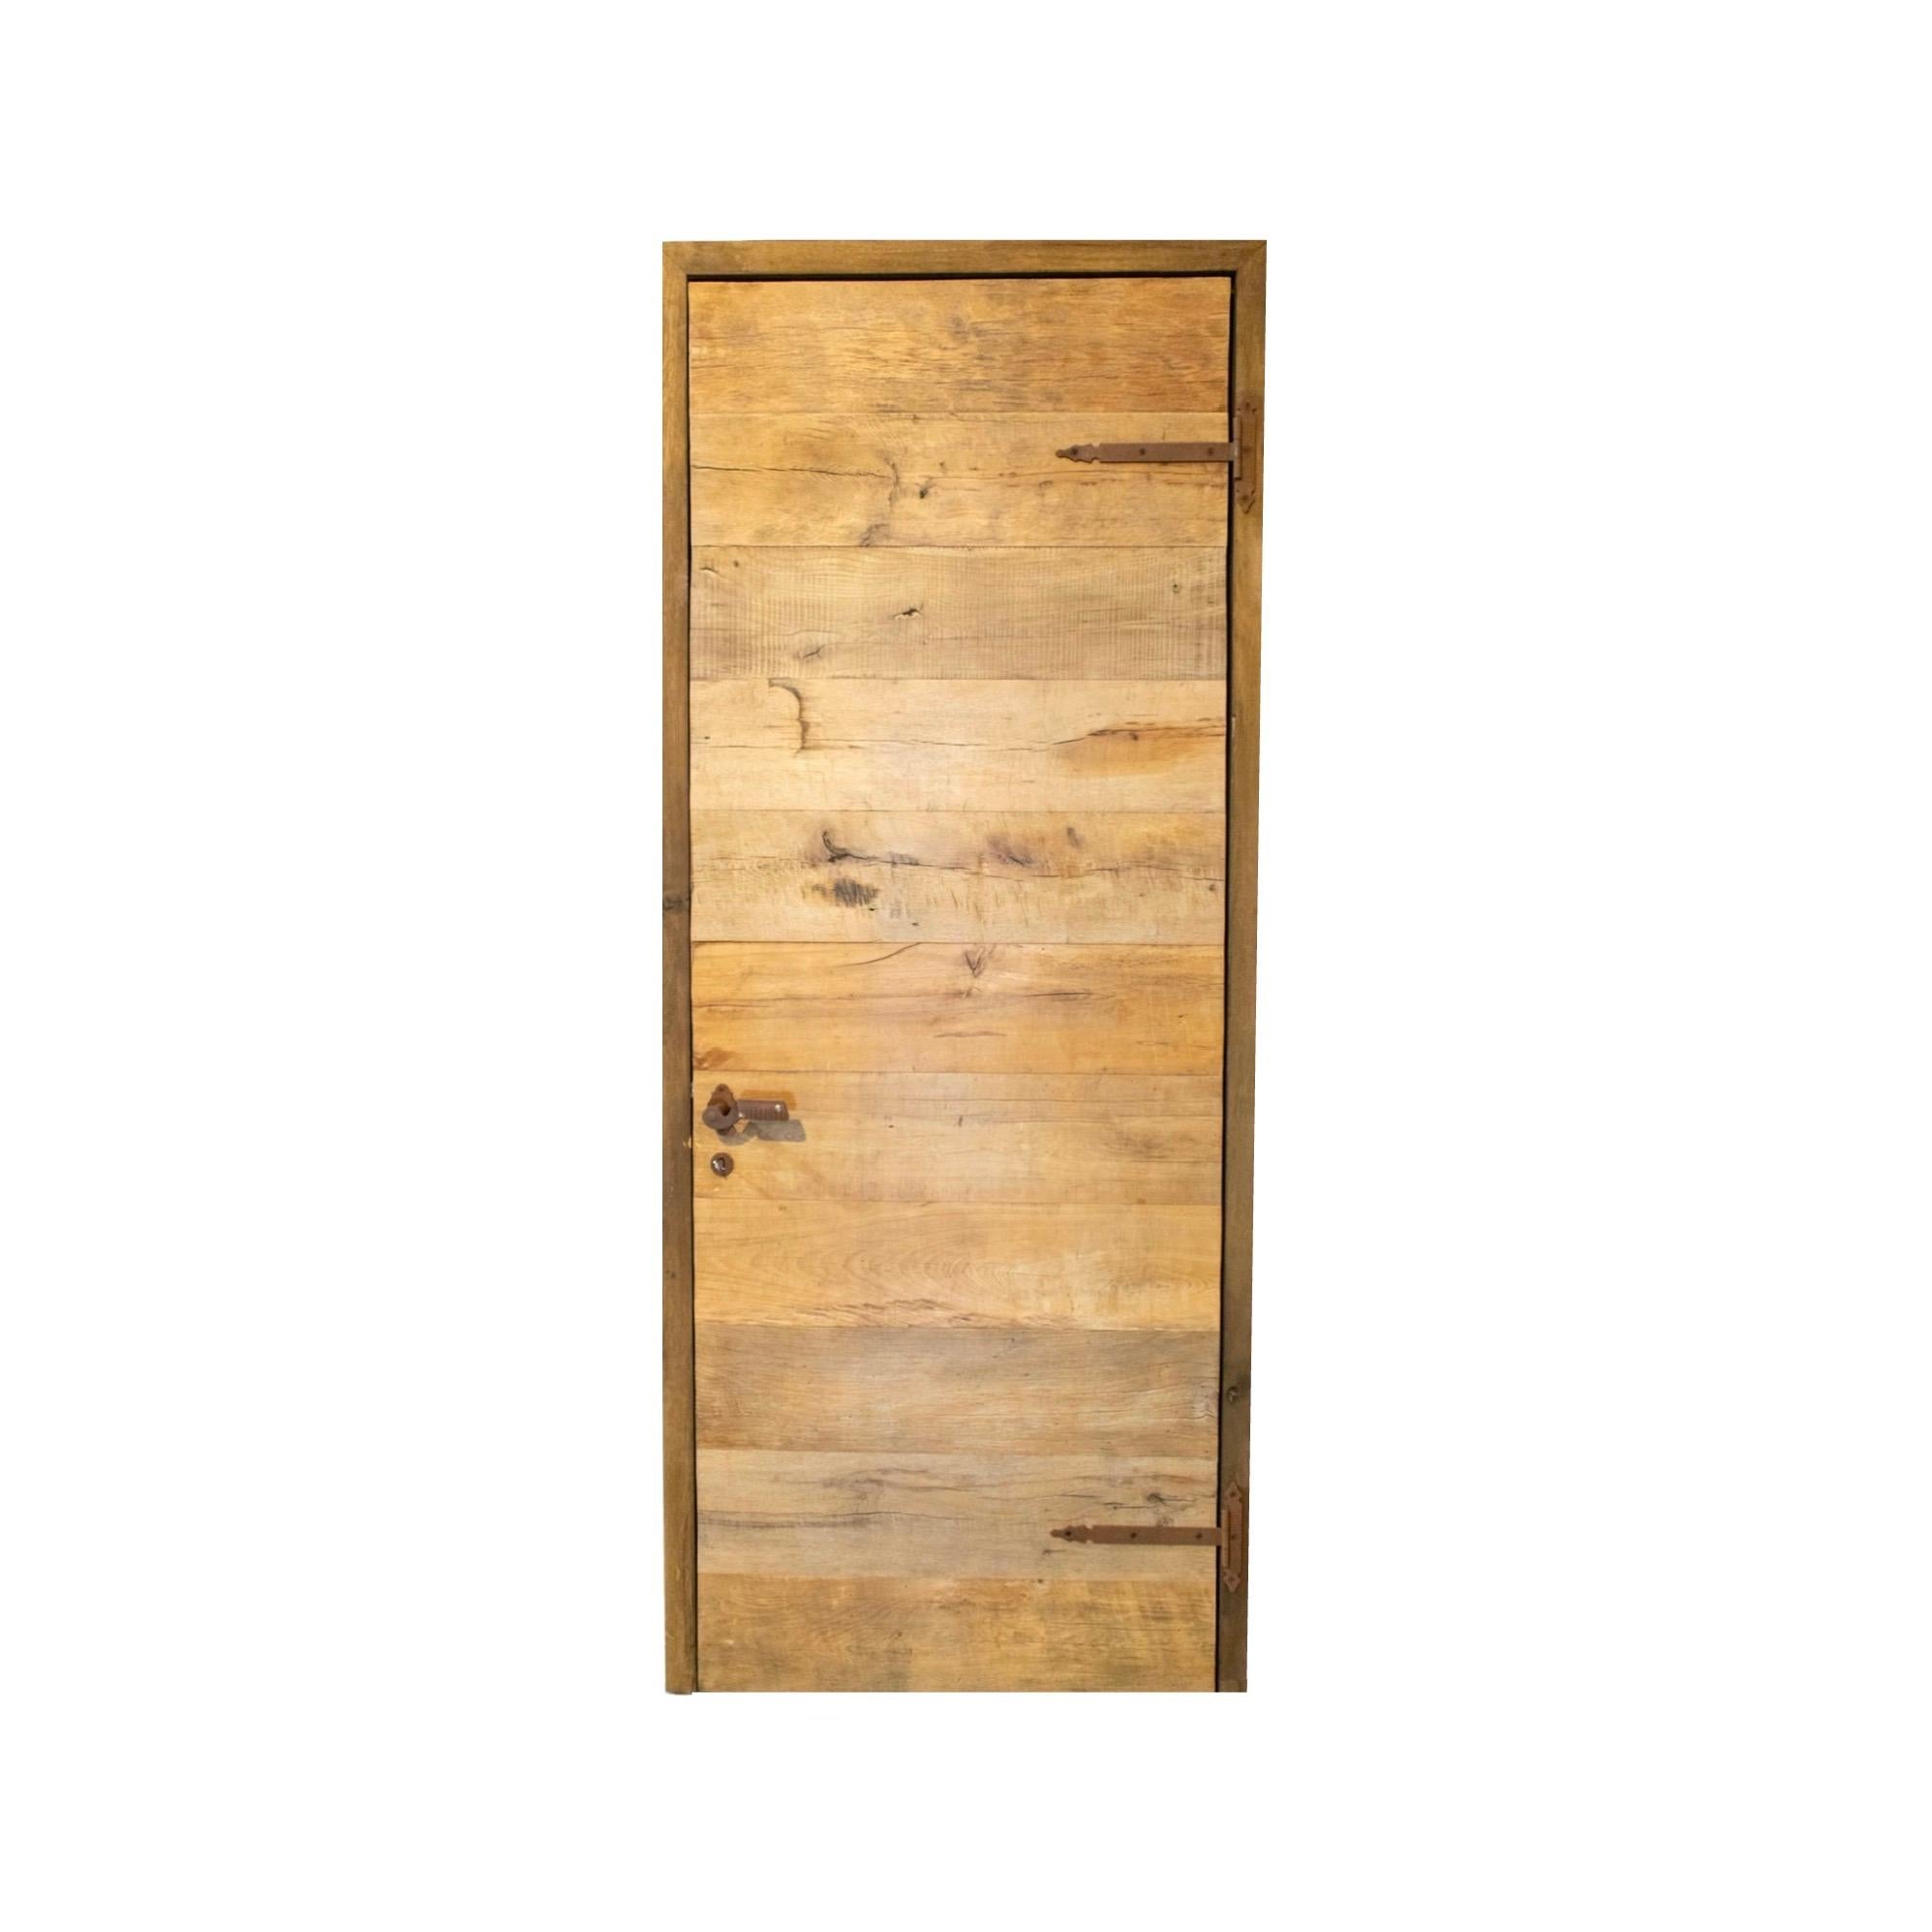 Une porte de récupération fabriquée à partir de bois de chêne nouvellement construit. La porte est prête à être verrouillée et est livrée avec une clé. Circa, 18ème siècle. 

Les portes rustiques récupérées sont des portes fabriquées à partir de